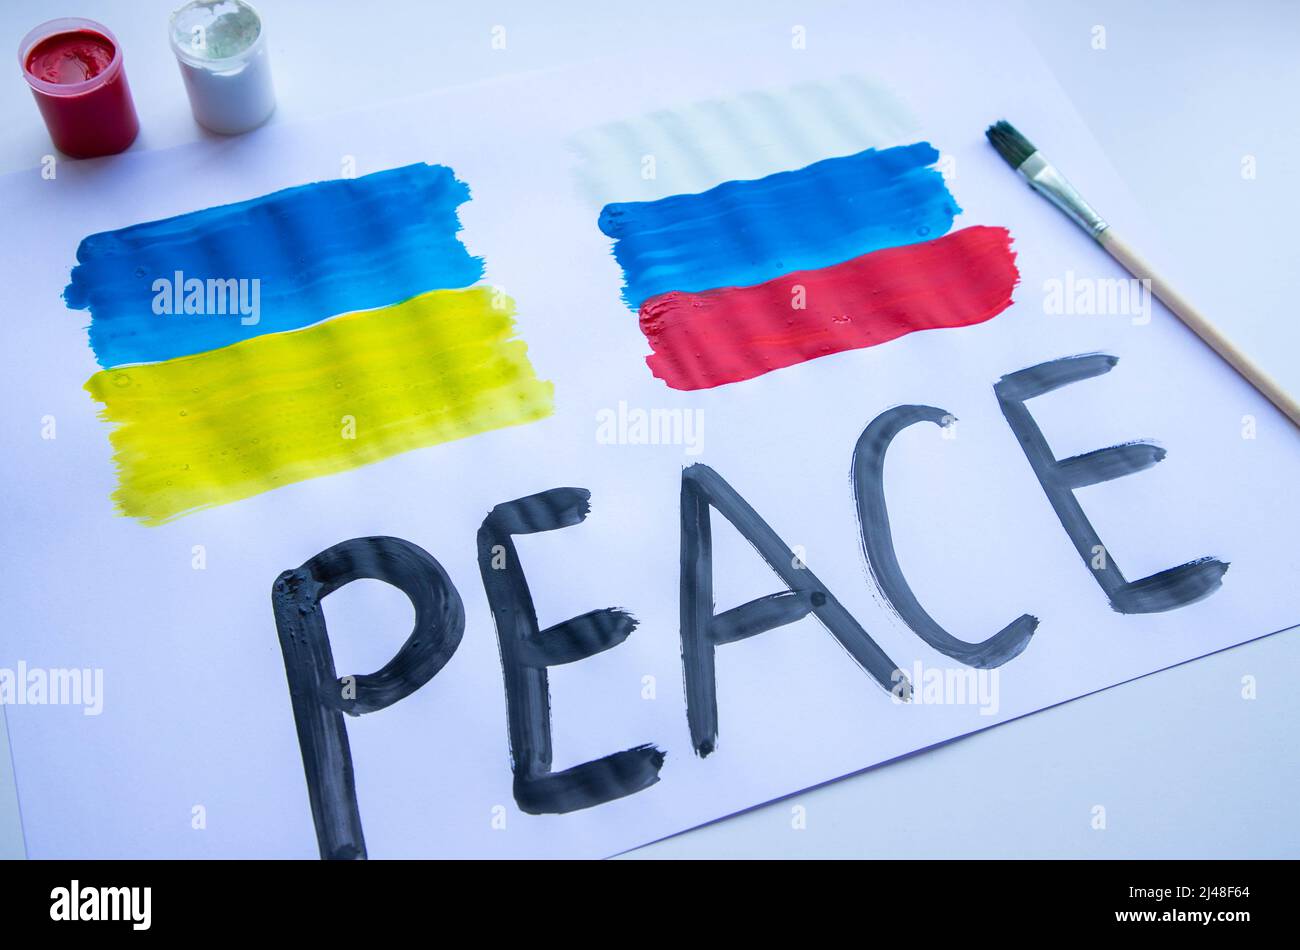 Sobre la mesa un cartel con la bandera de Ucrania y Rusia Foto de stock